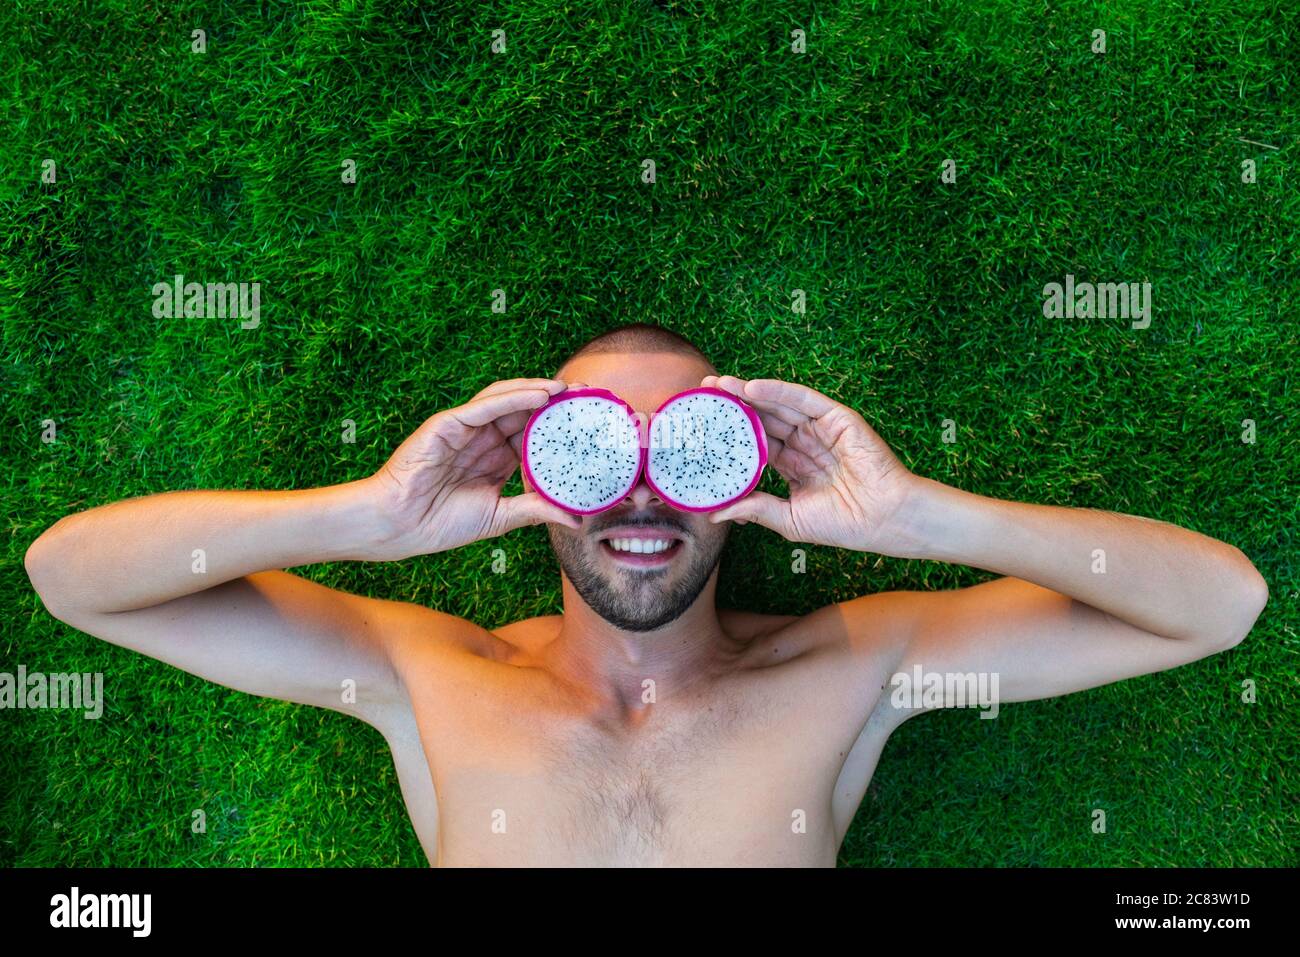 Lächelnder junger Mann, der auf einem grünen Gras liegt, mit Drachenfrucht statt mit Augen Stockfoto